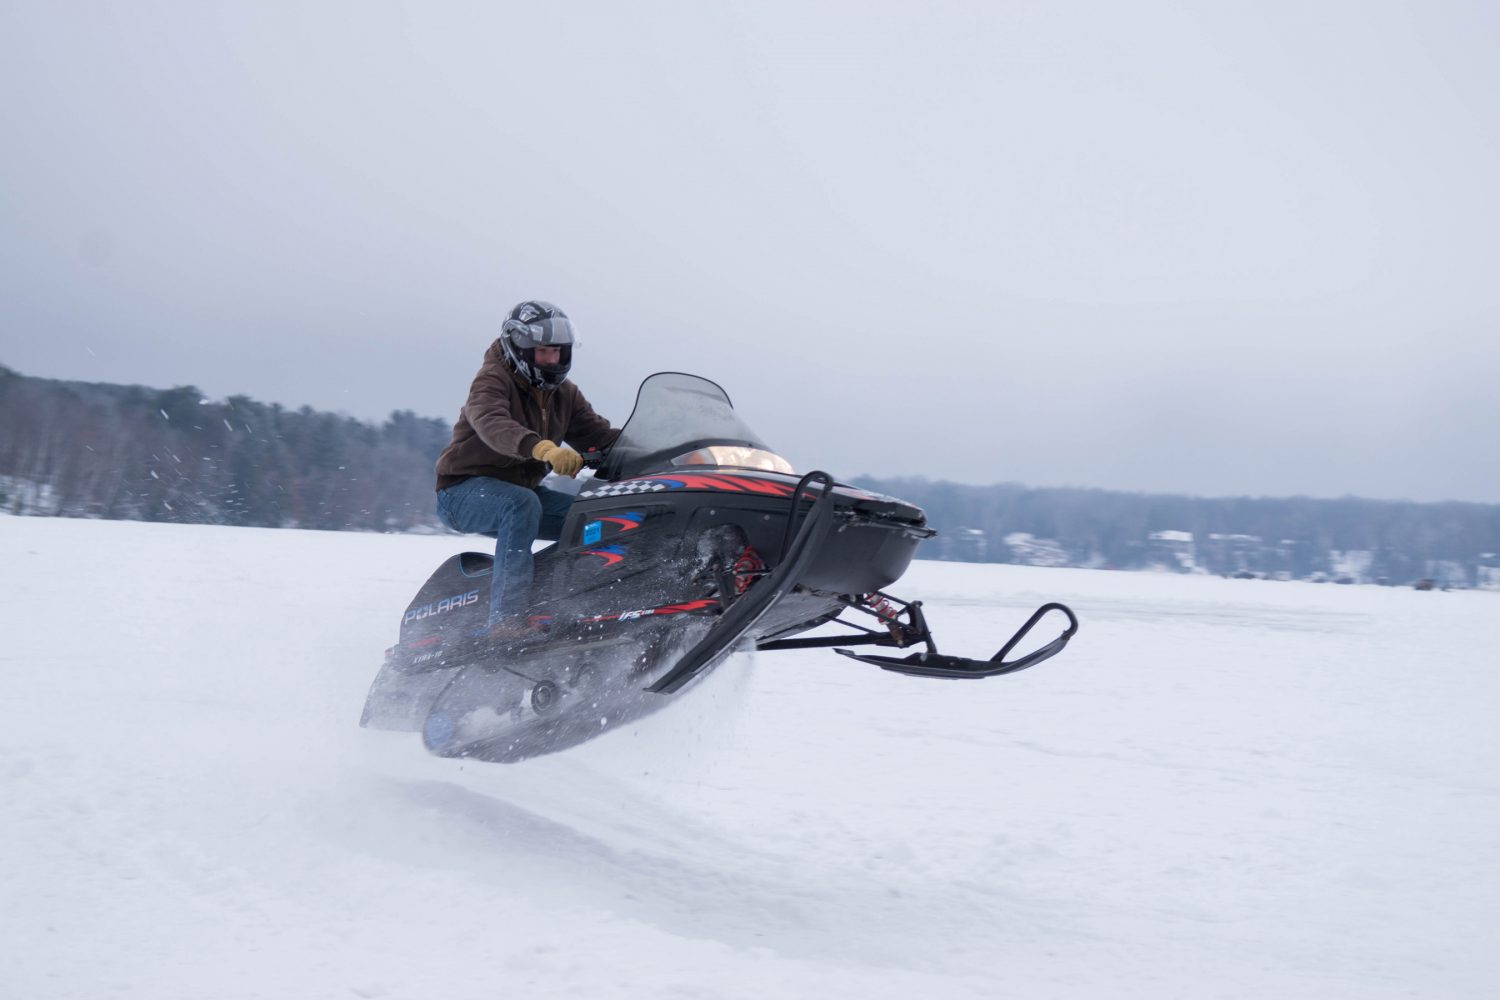 Lincoln County snowmobile/winter ATV trails open